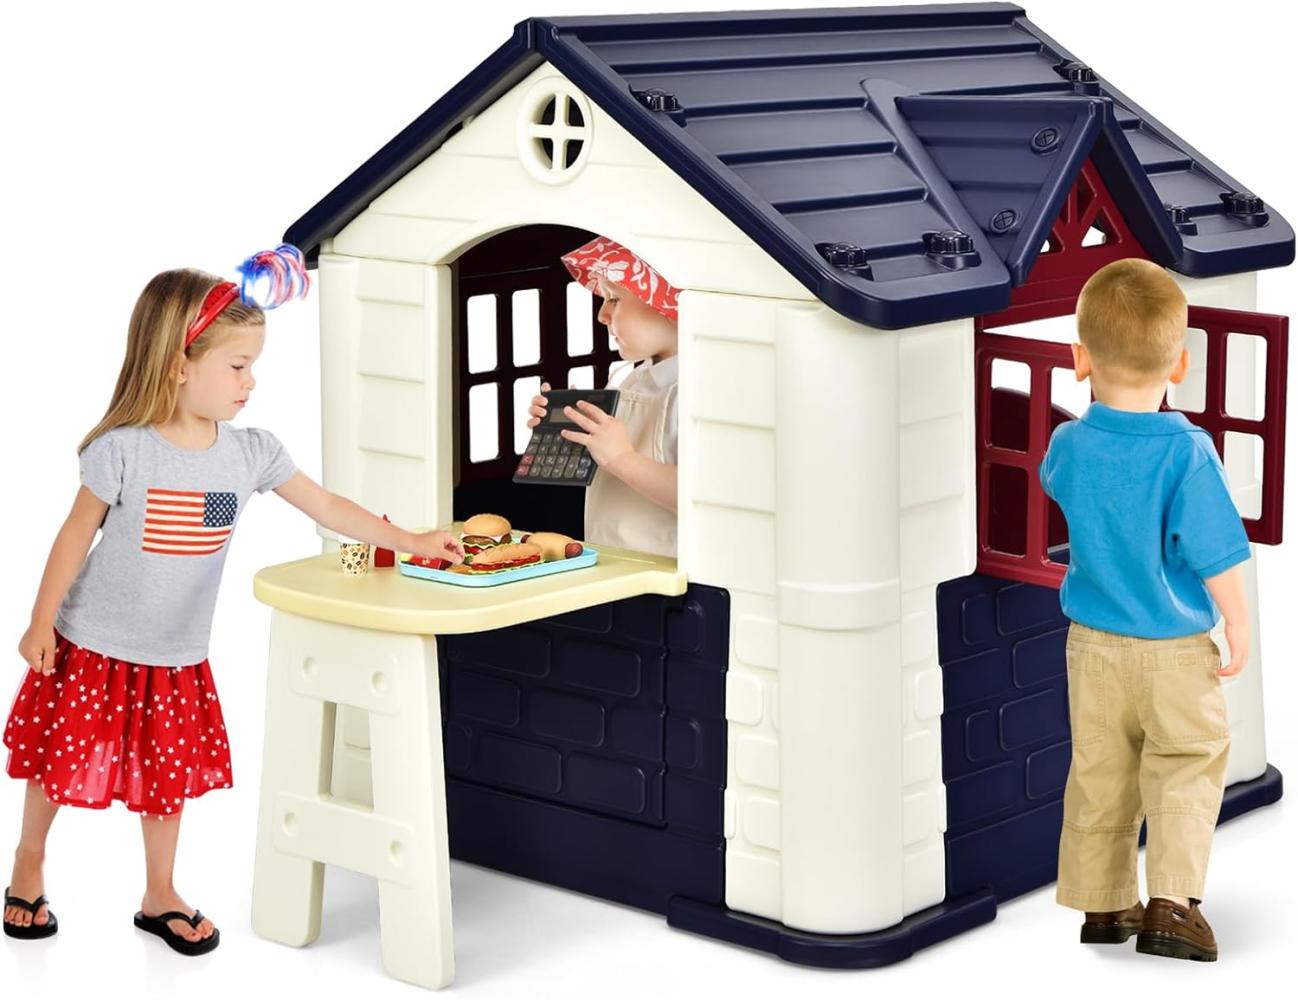 COSTWAY 164 x 124 x 132 cm Kinder Spielhaus mit Pickniktisch, Türen und Fenstern, Kinderhäuschen Outdoor inkl. Spielzeugset und Regenschutzhülle, ideal für Jungen und Mädchen (Blau) Bild 1